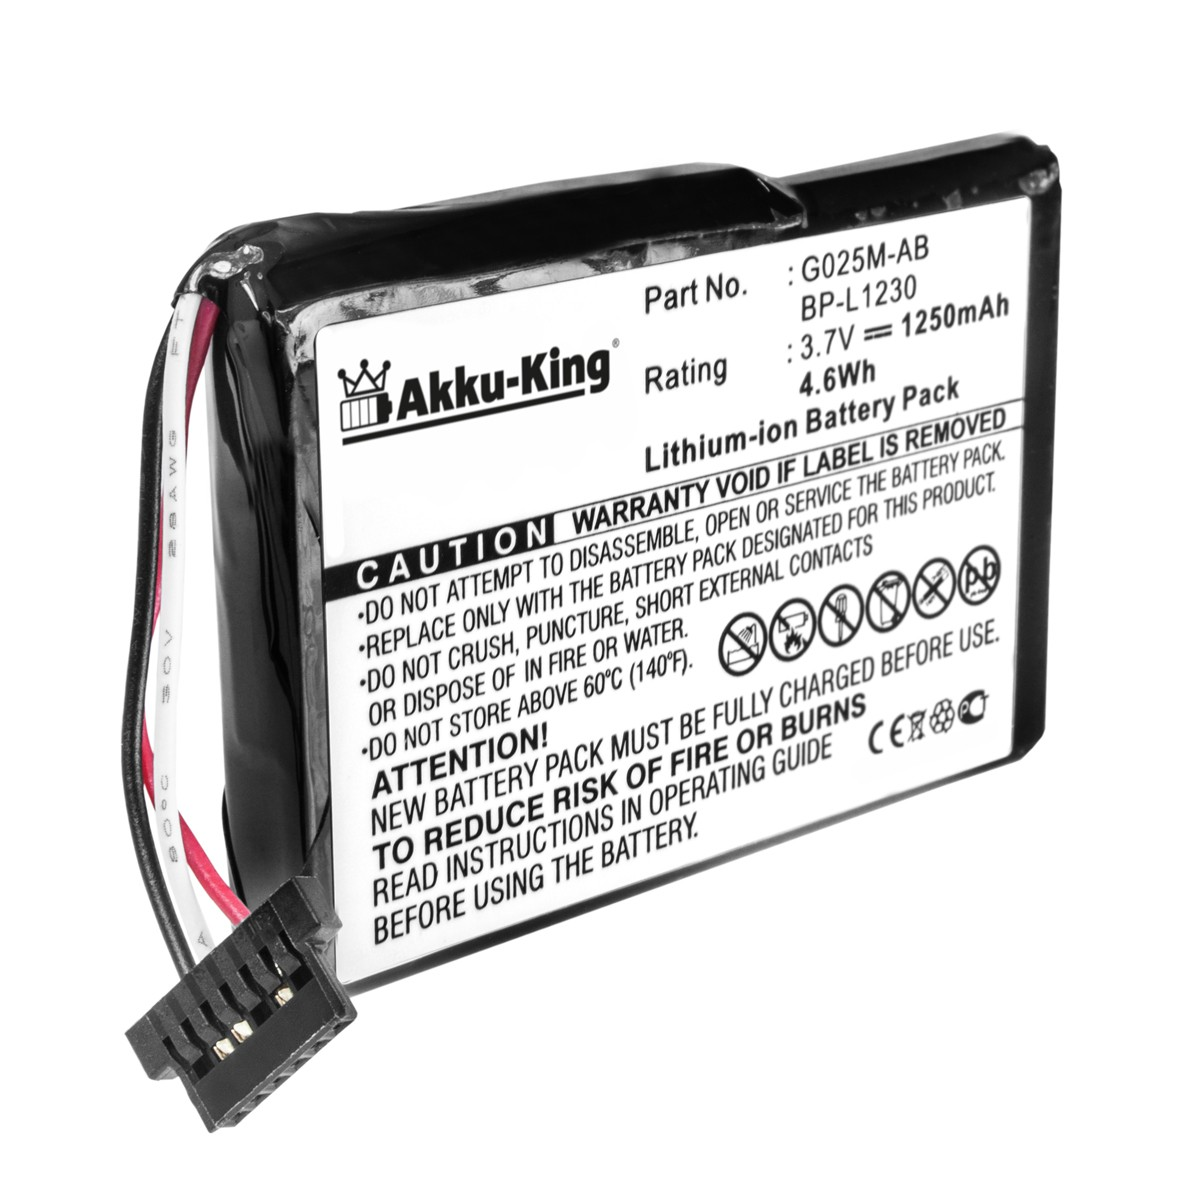 Geräte-Akku, 1250mAh Akku mit 3.7 Volt, AKKU-KING Medion Li-Ion kompatibel G025A-AB